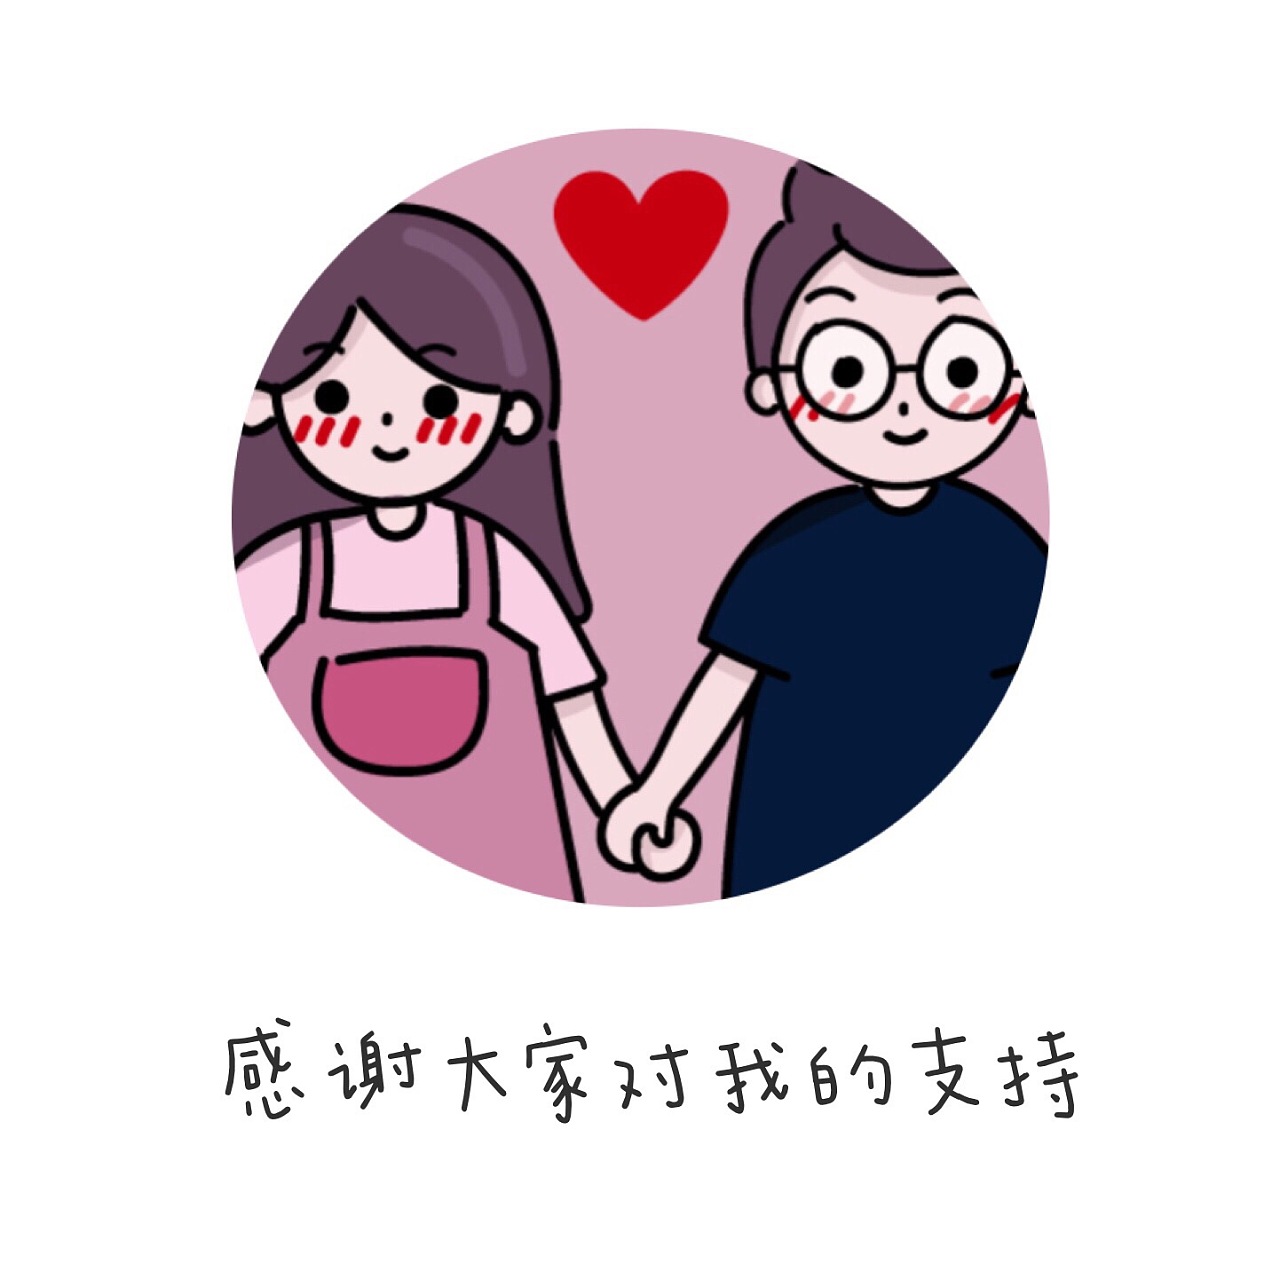 最萌的表情包_表情 bobi乖巧猫仰望红心表情 我是最萌的 九蛙图片 表情(2)_中国排行网